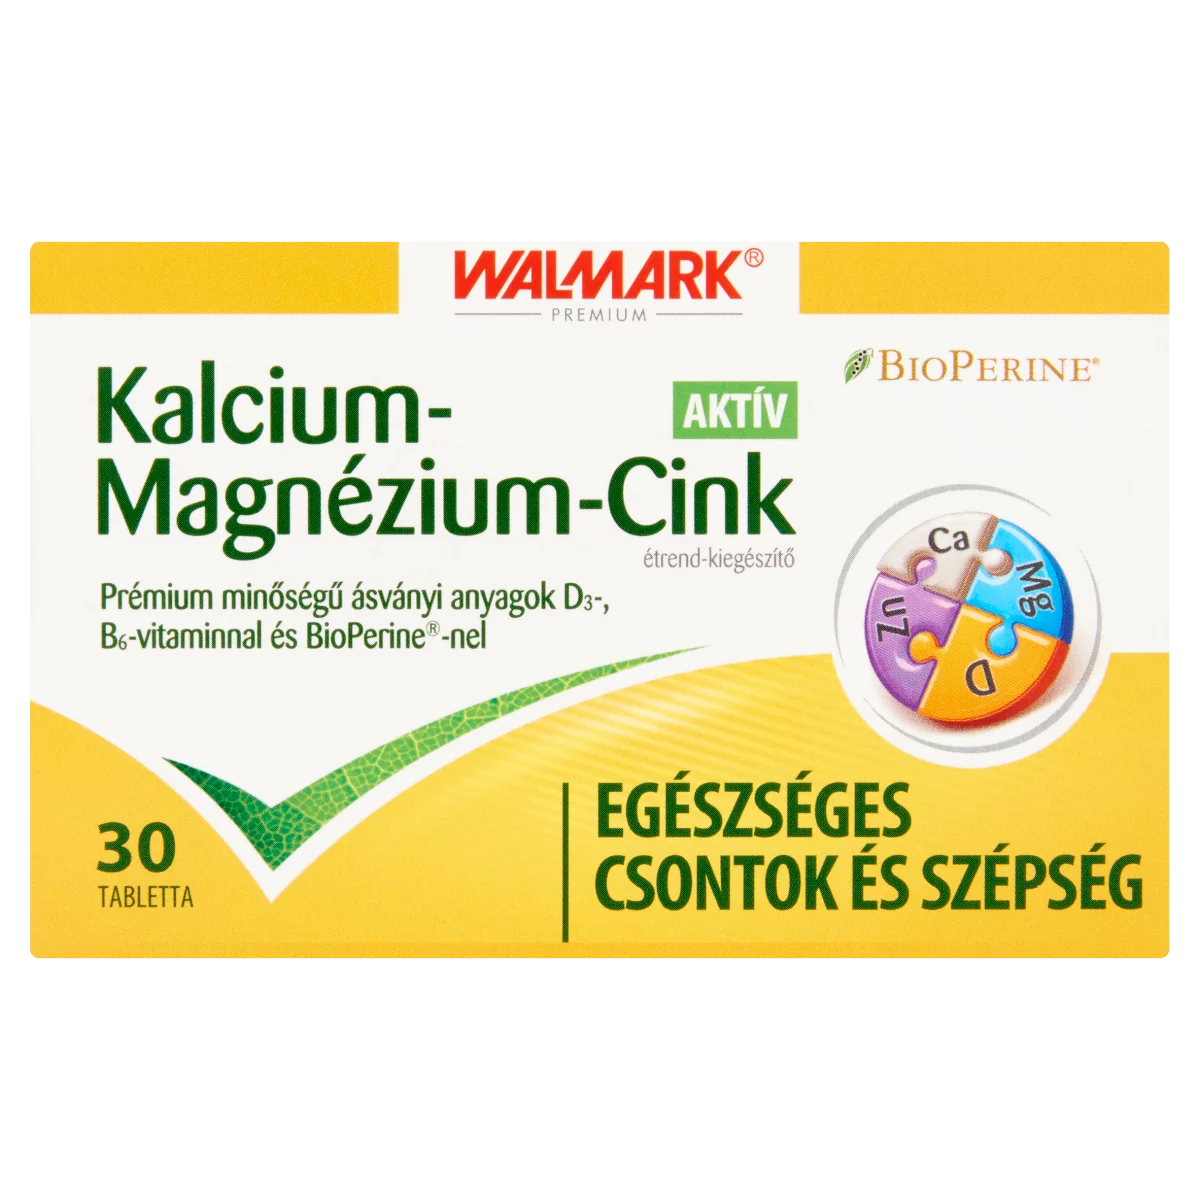 Walmark Kalcium-Magnézium-Cink Aktív étrend-kiegészítő tabletta 30 db